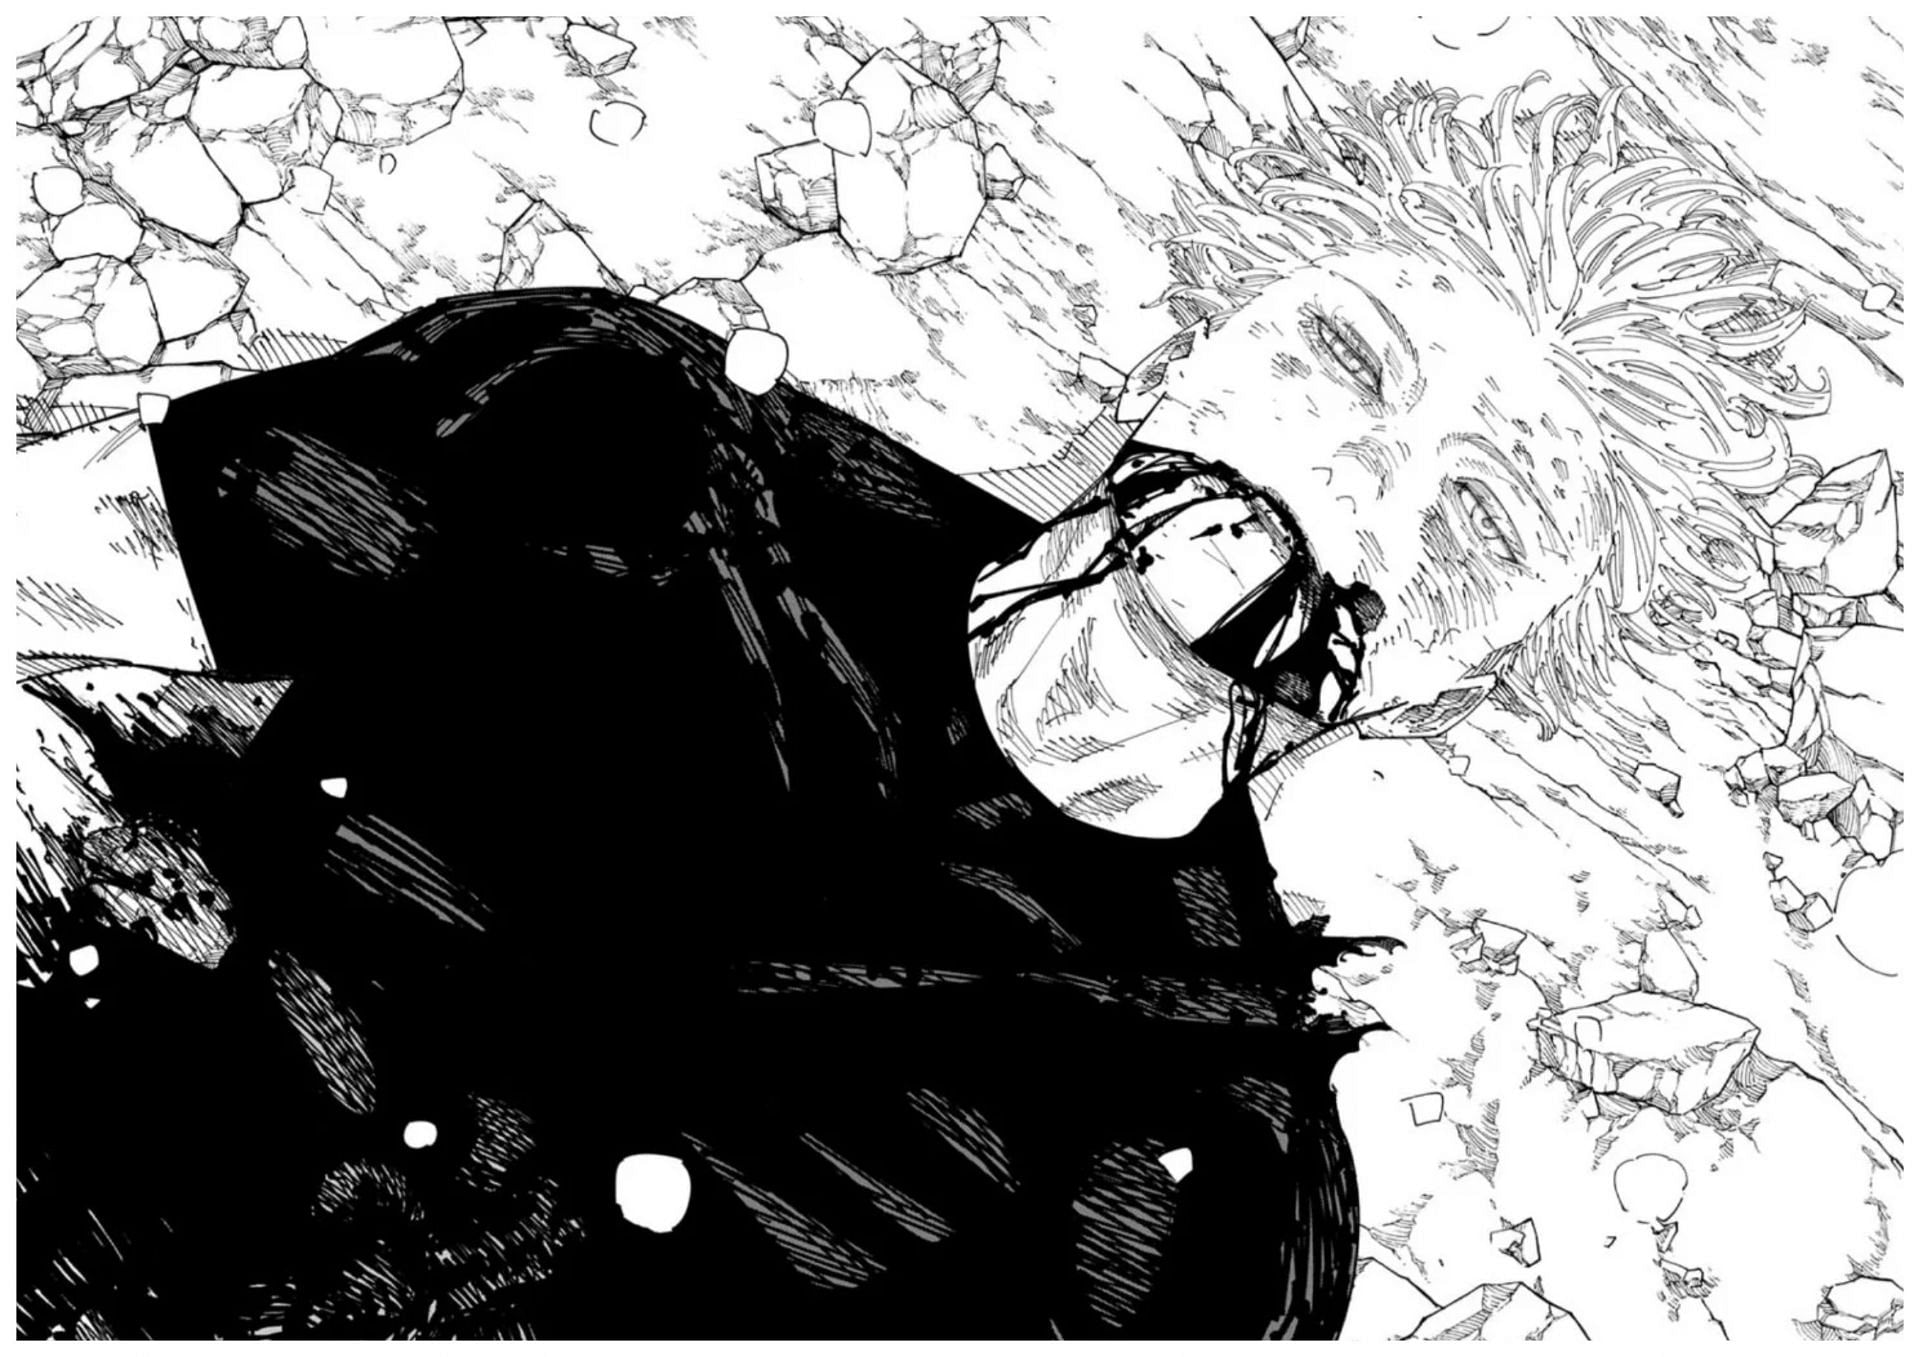 Jujutsu Kaisen&rsquo;s final arc - Gojo Satoru (Image via Shueisha)